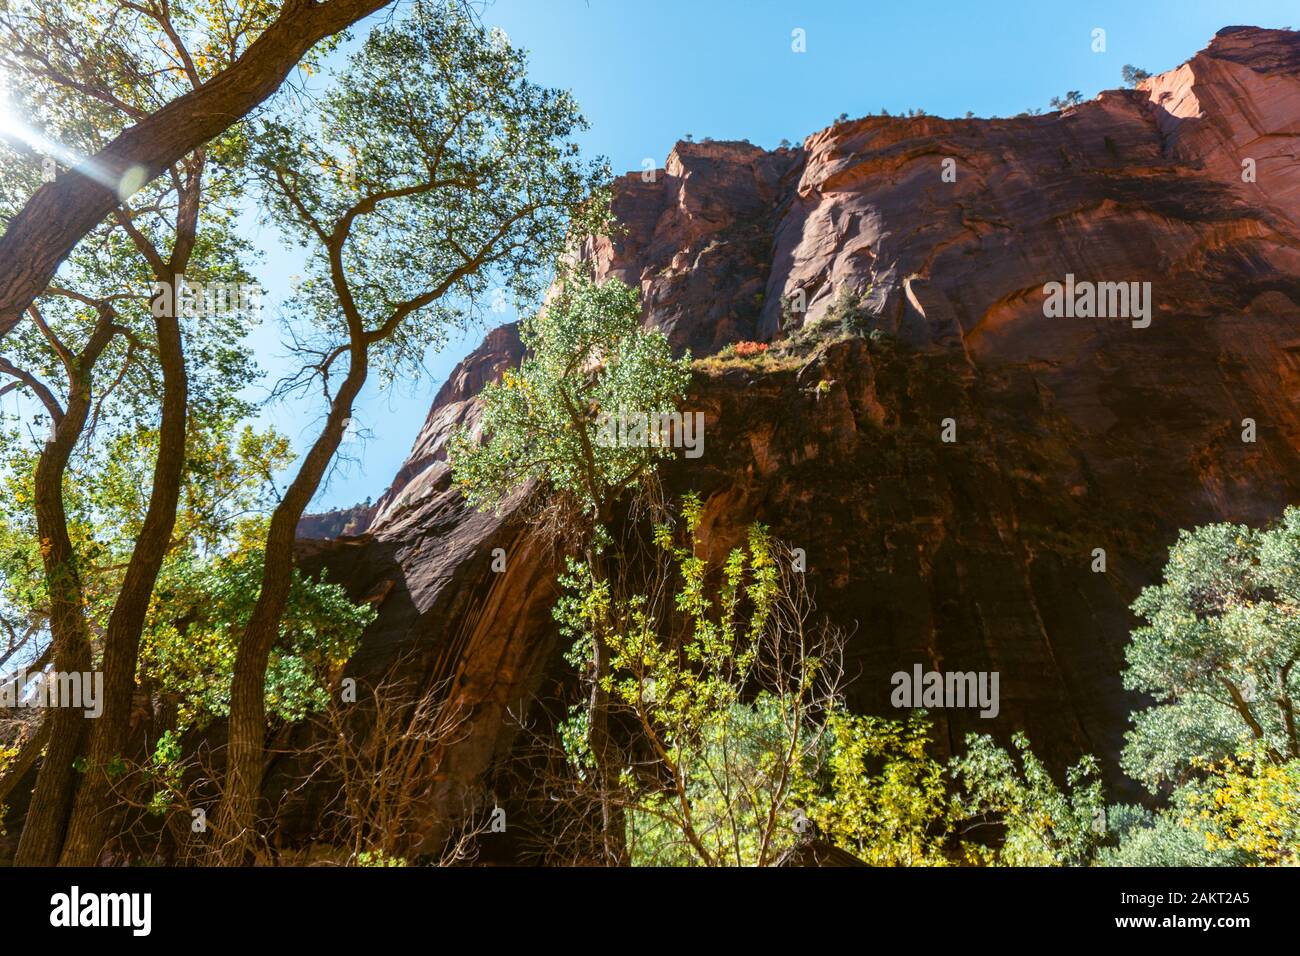 Altipiani, labirinti di stretti e profondi canyon in arenaria e impressionanti formazioni rocciose caratterizzano lo Zion National Park nel sud-ovest dello Utah. Foto Stock